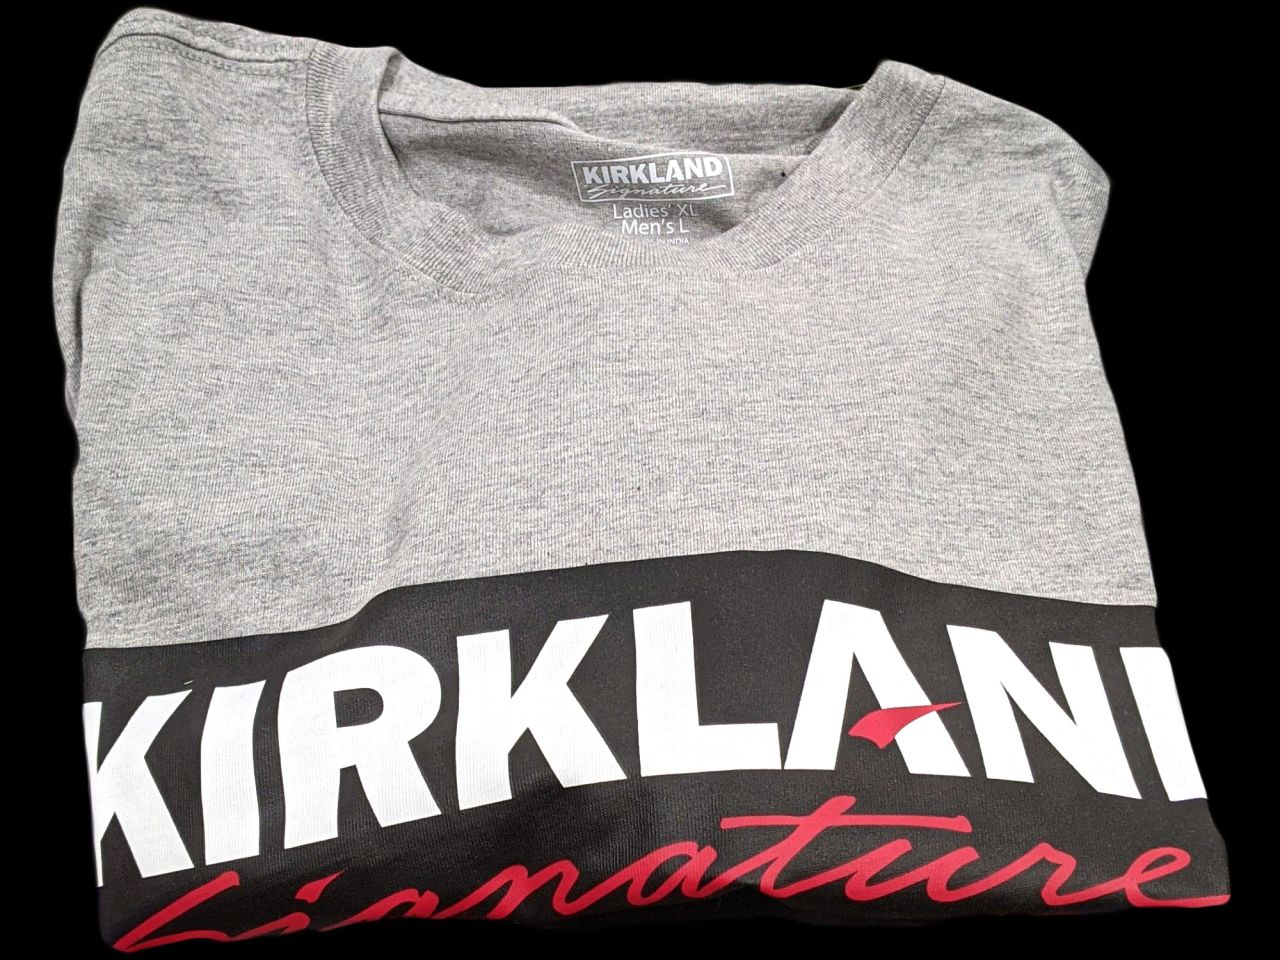 カークランド 男女兼用 KSロゴ半袖Tシャツの在庫情報:コストコで在庫番